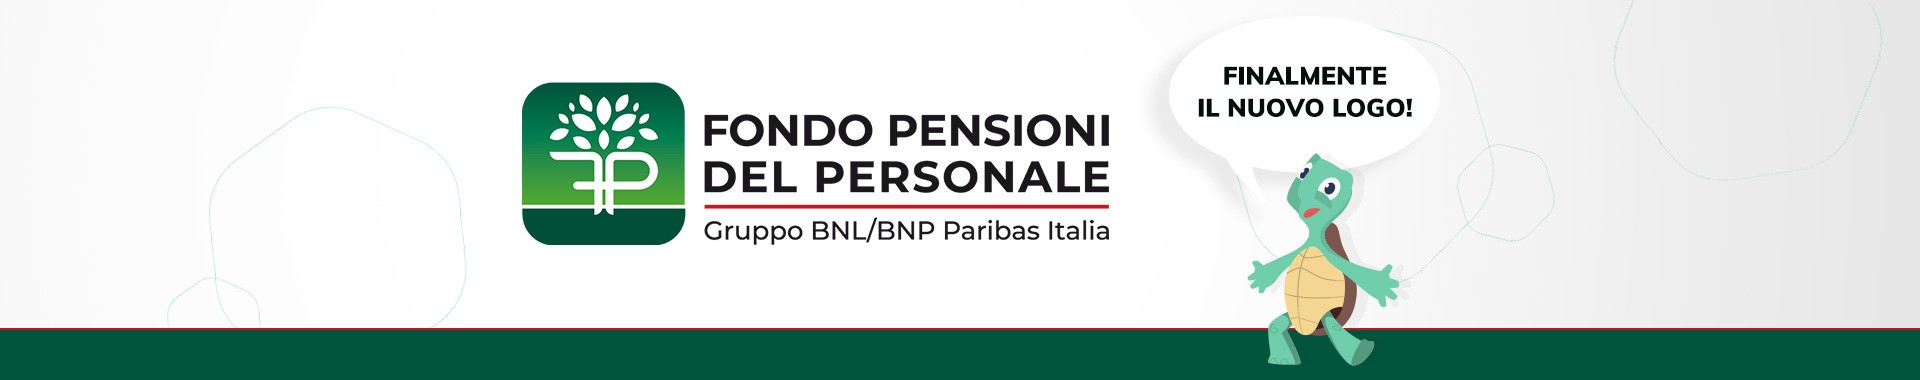 Fondo Pensioni del Personale Gruppo BNL/BNP Paribas Italia